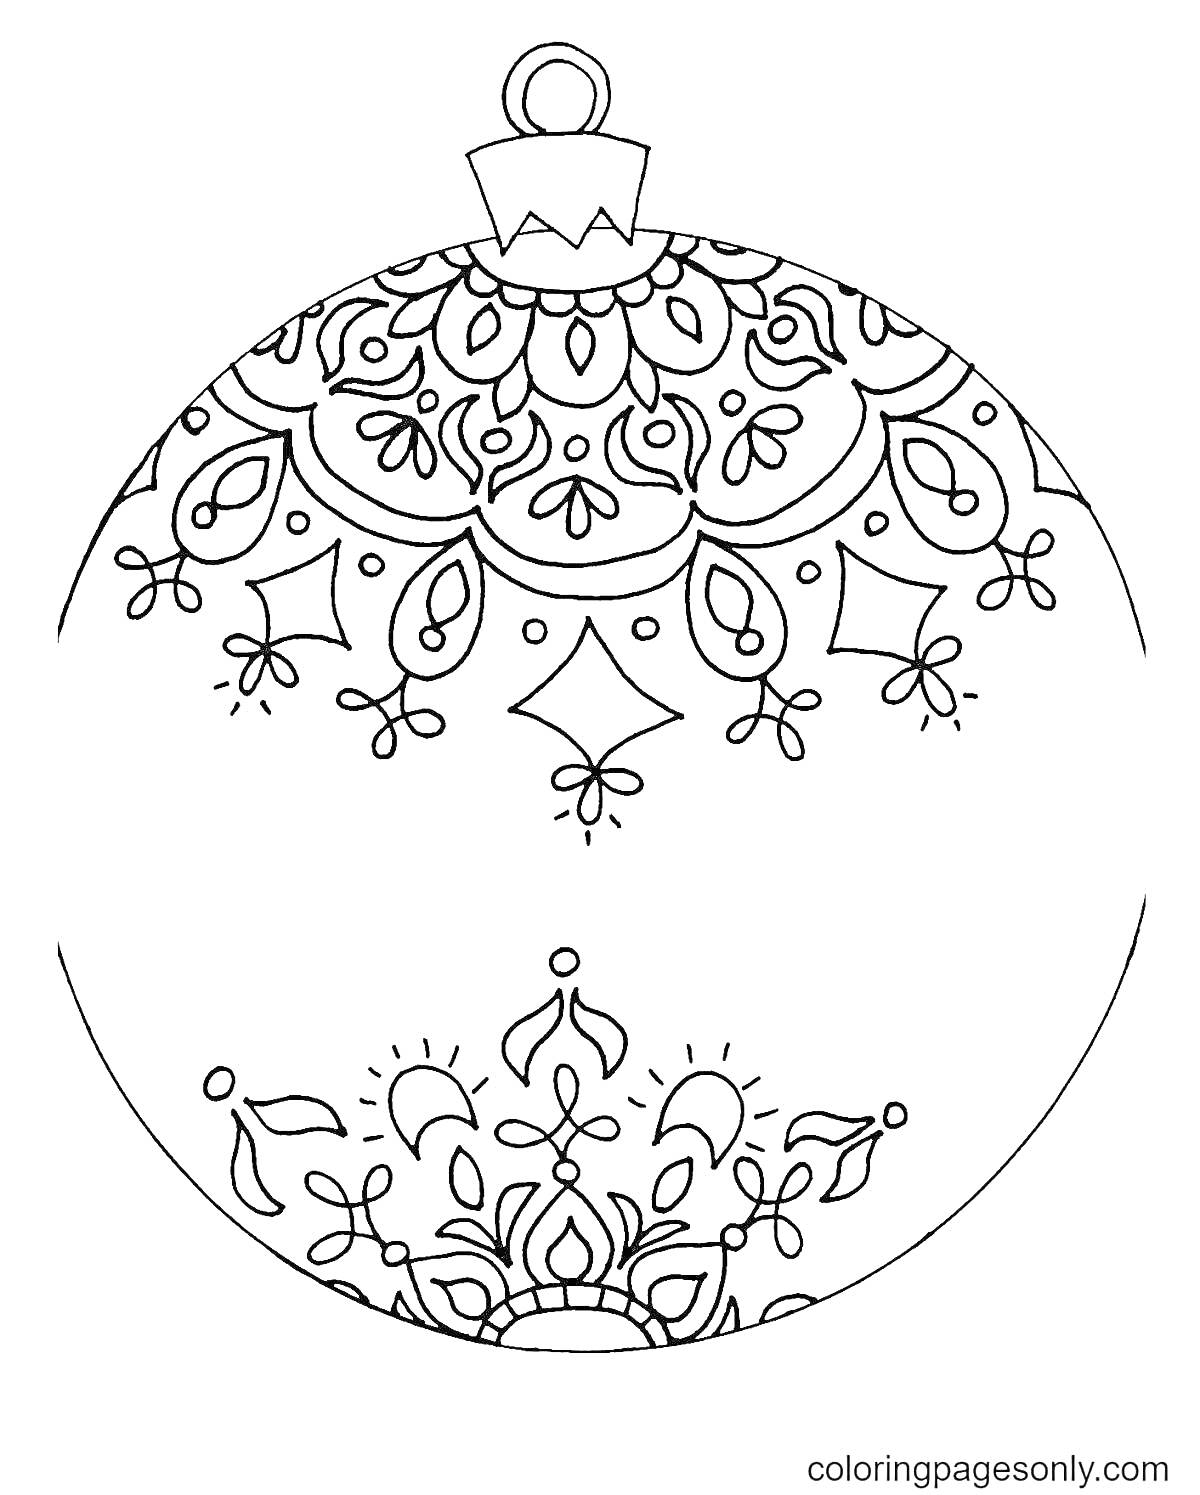 Раскраска новогодний шар с узорами, включающими узорчатые листья, ромбы, капли и полукруги